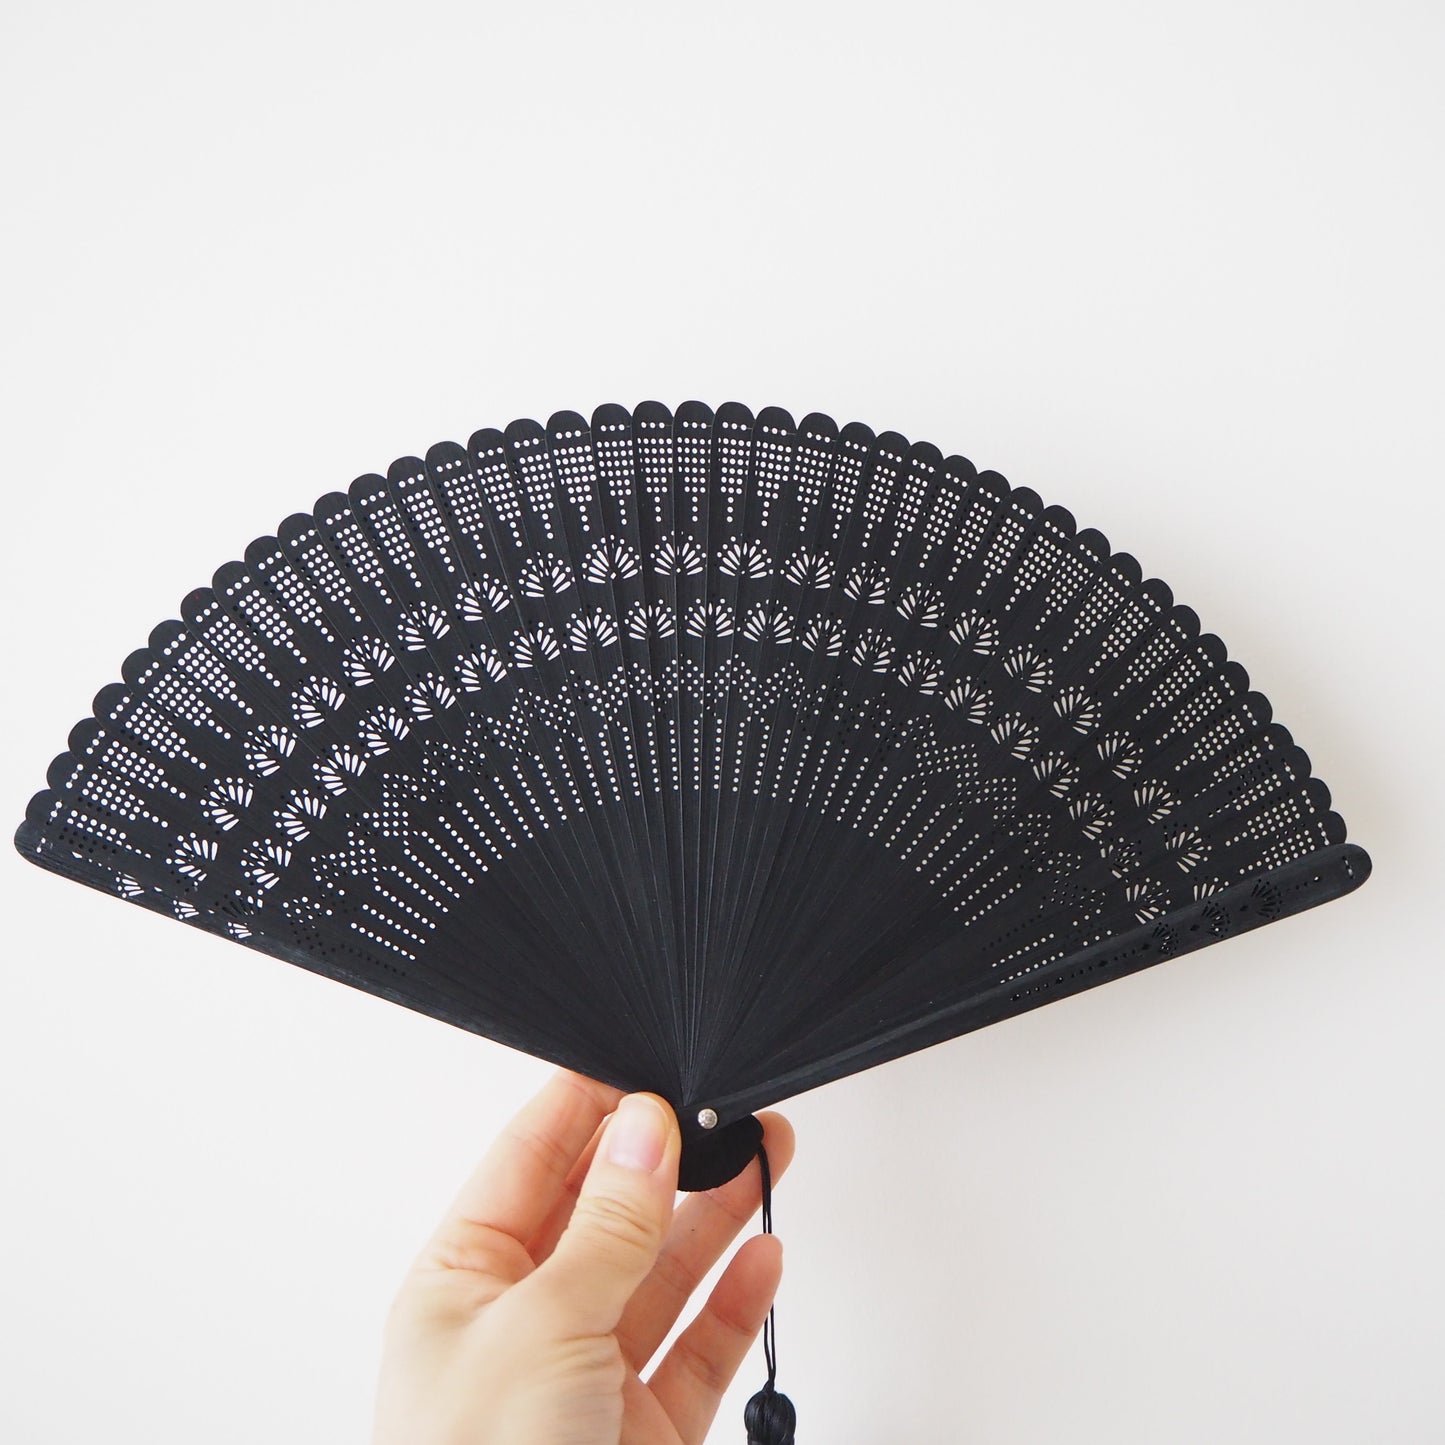 Wooden Folding Fan - Palm, black